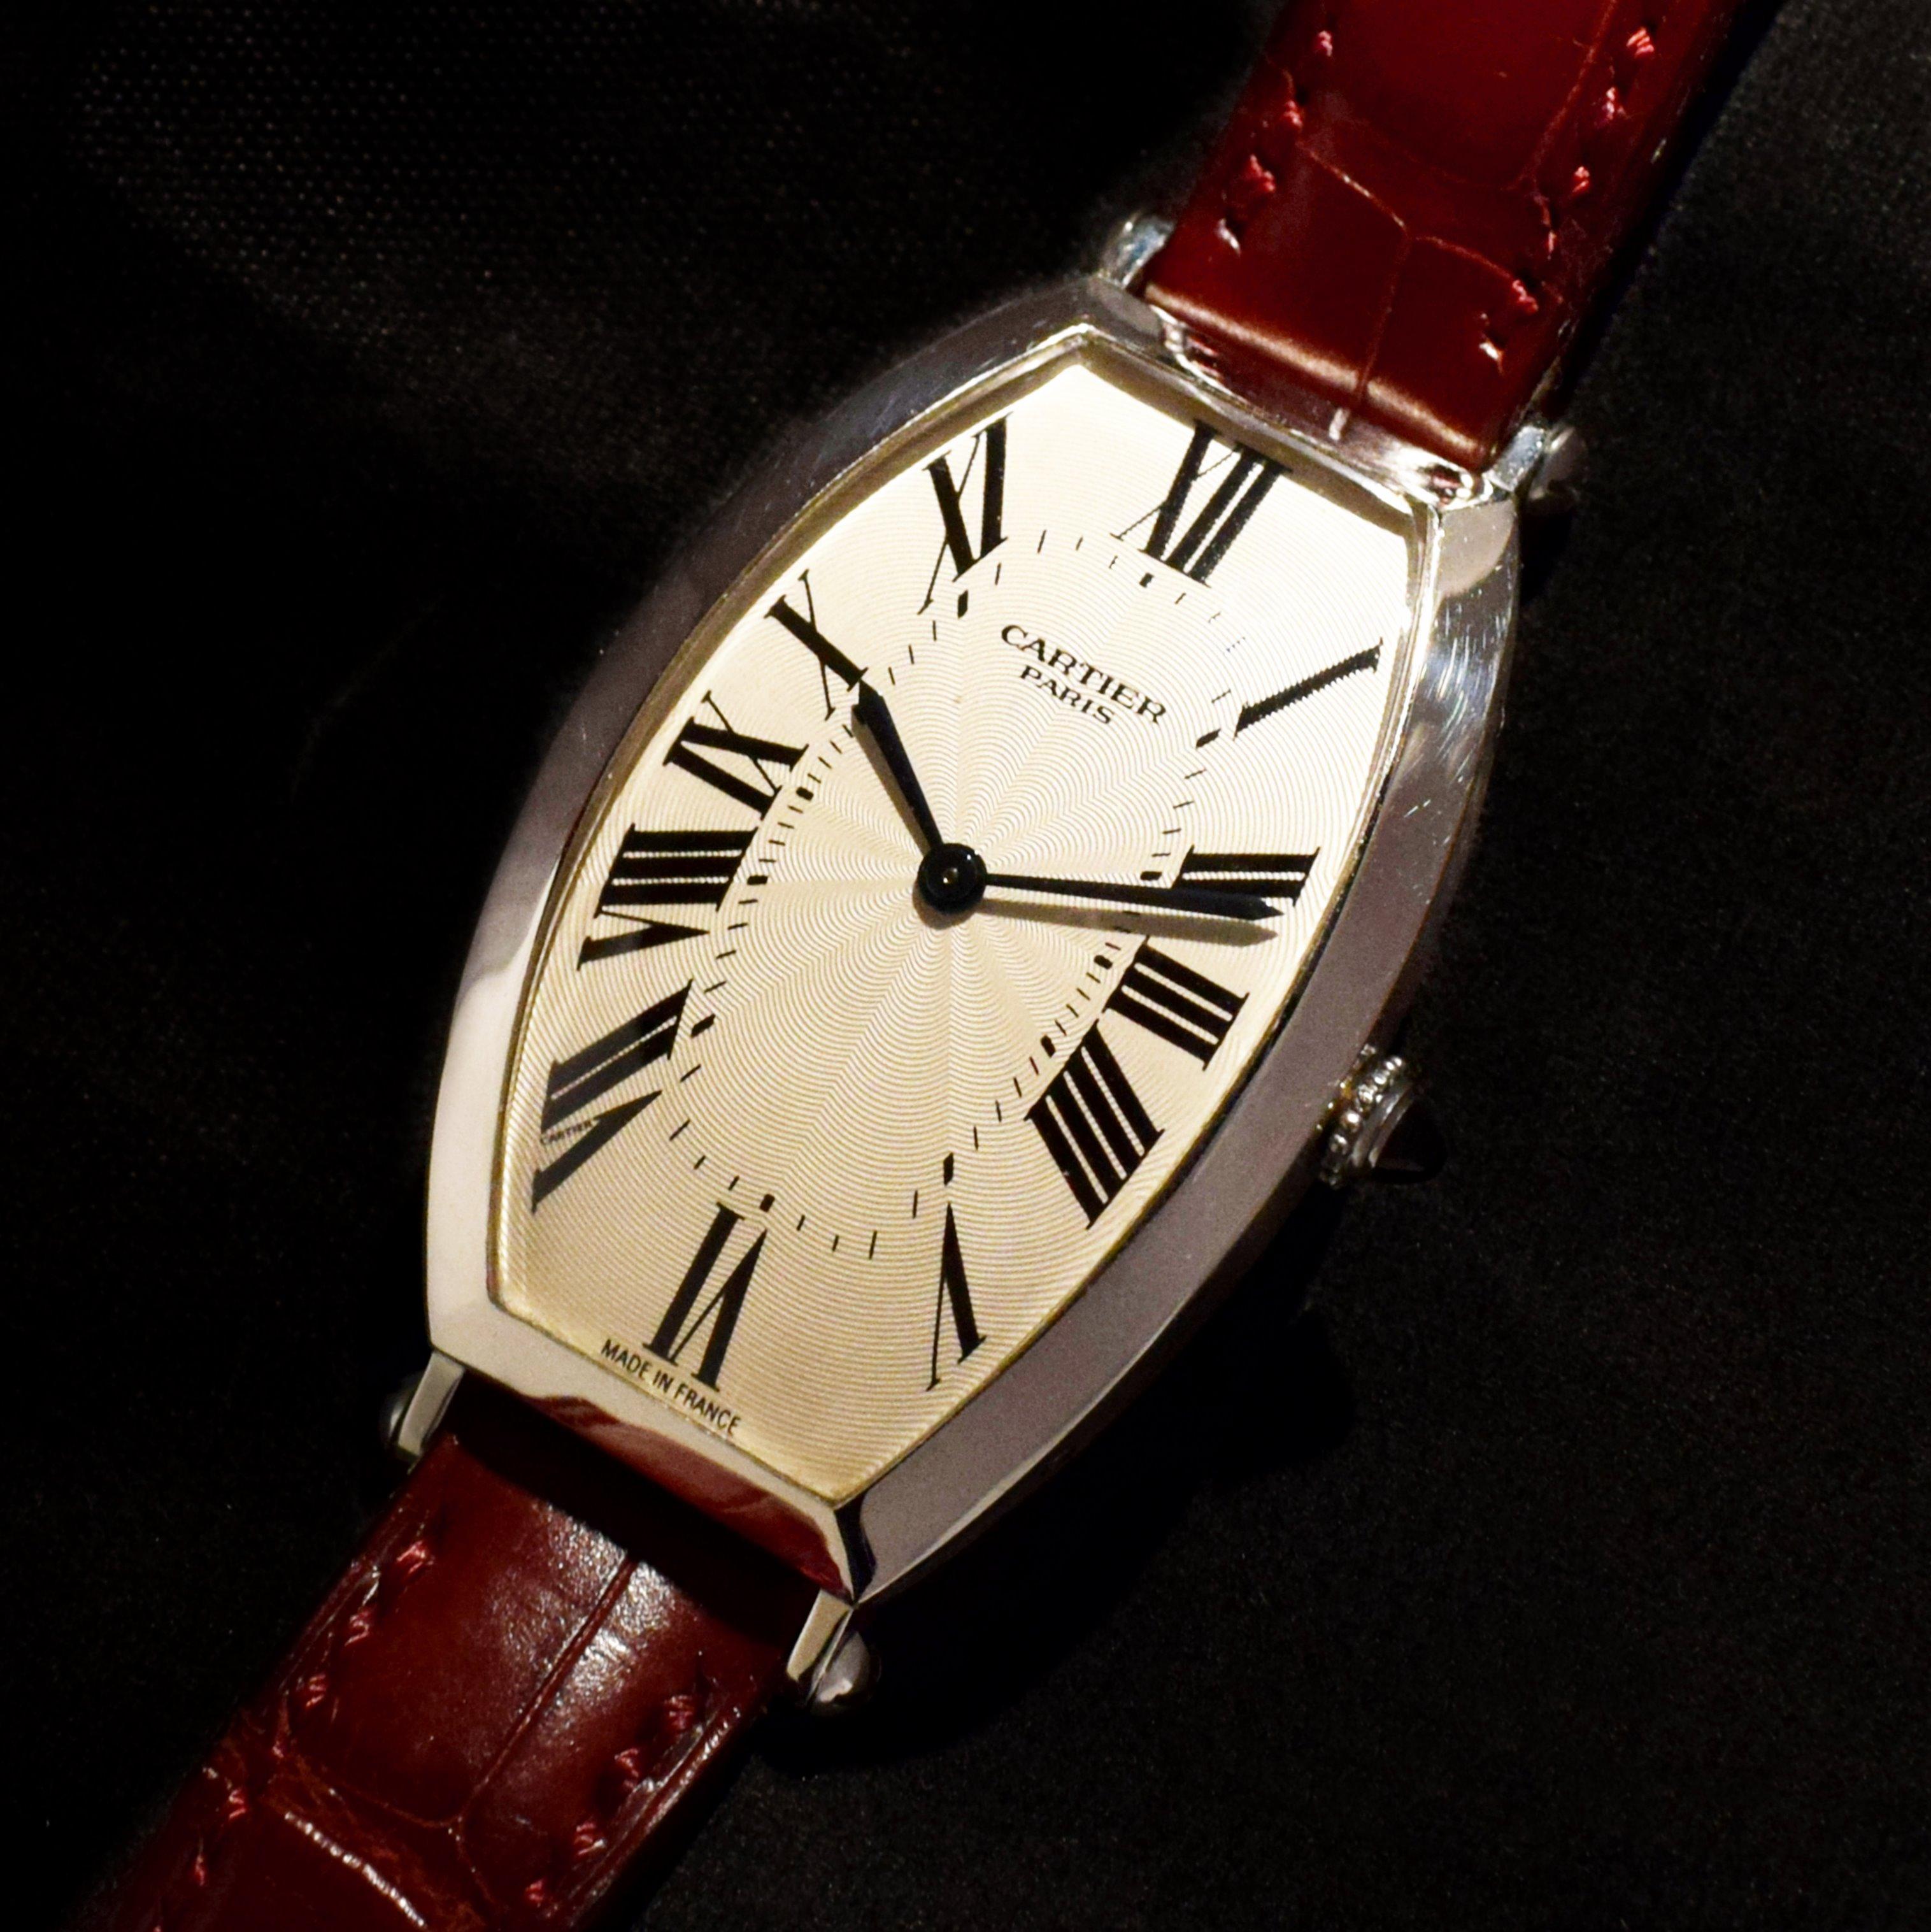 Marke: Cartier
Modell: Tonneau 2435B
Jahr: 1990er Jahre
Seriennummer: 01xxAF
Referenz: C03124
Dieses Modell 2435B ist eine Neuauflage der großen Tonneau-Armbanduhr aus den 1920er Jahren, die in den 1990er Jahren auf den Markt kam.
Gehäuse: